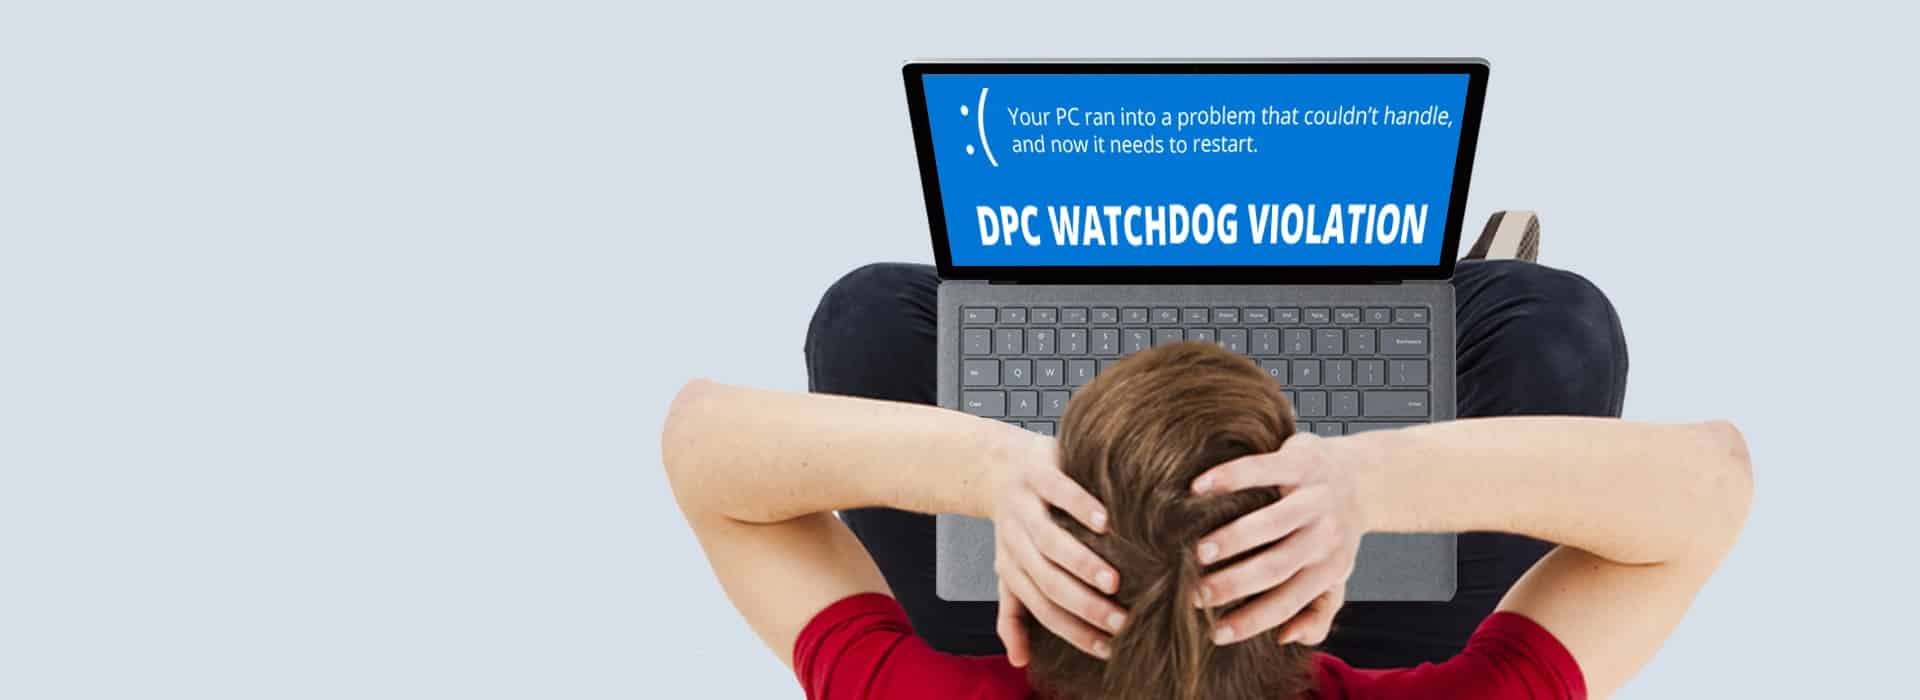 DPC Watchdog Violation Error